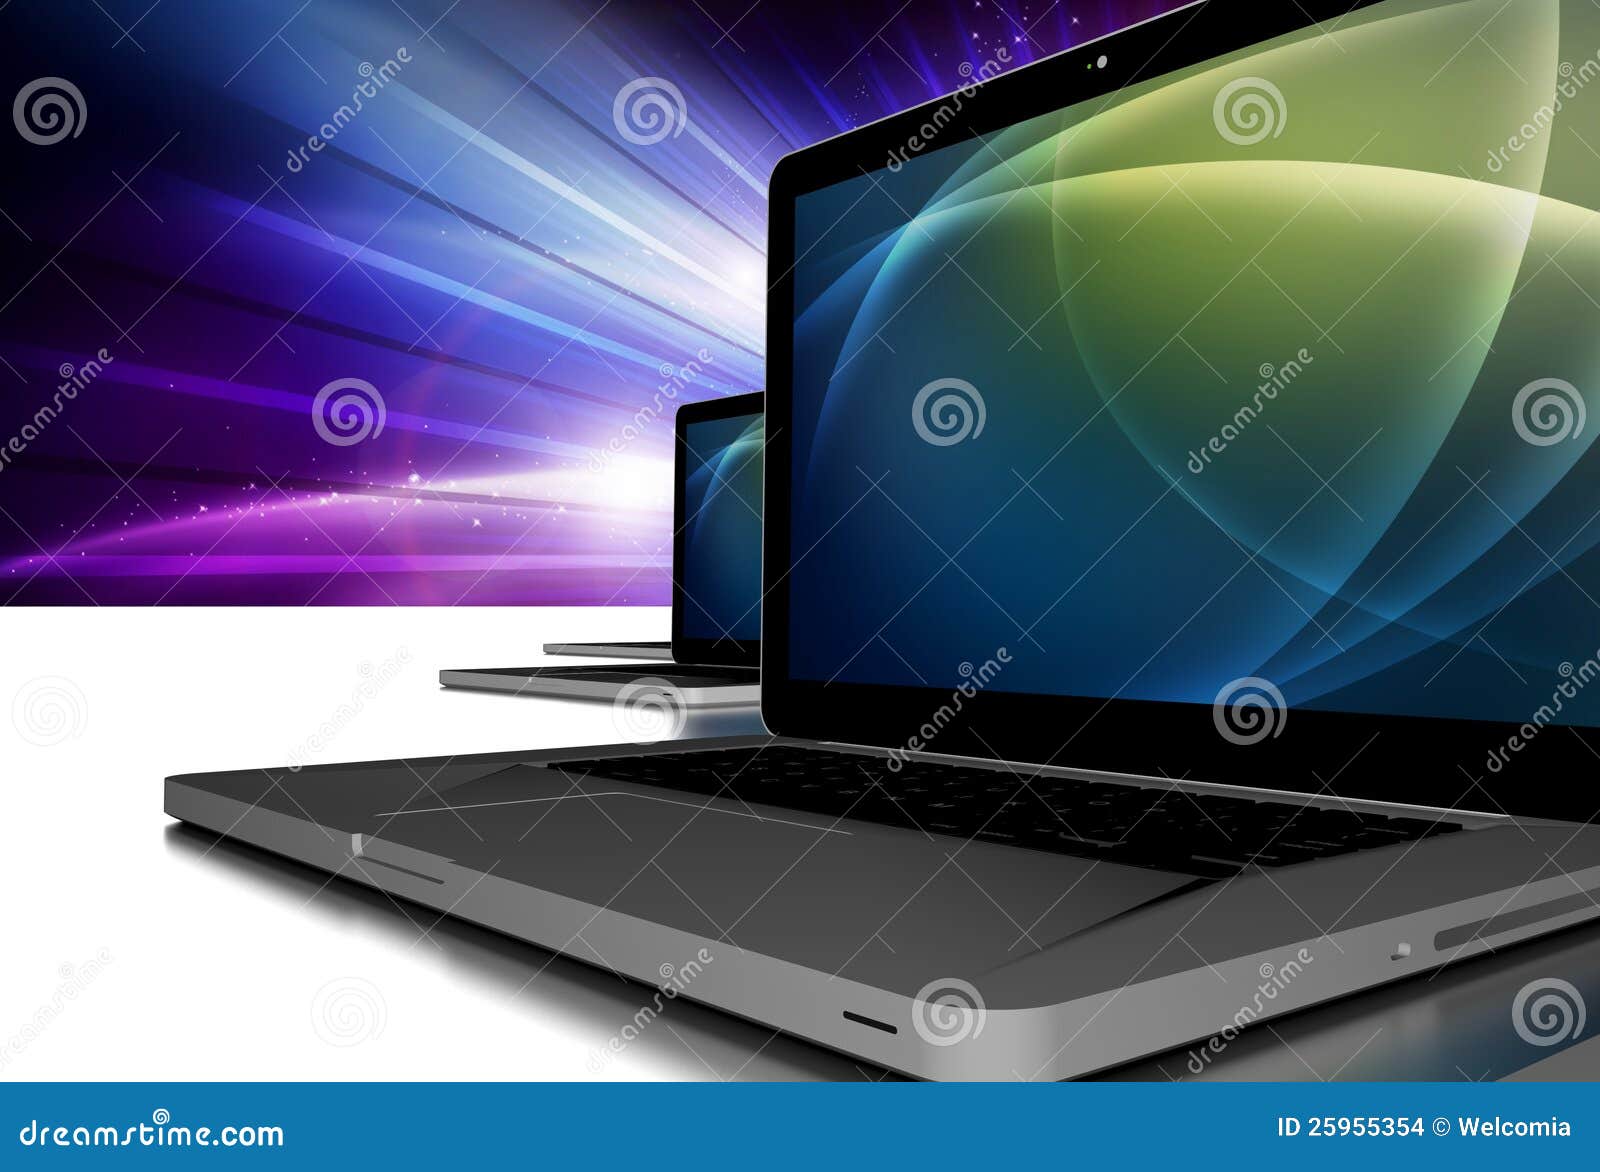 laptop pc computers